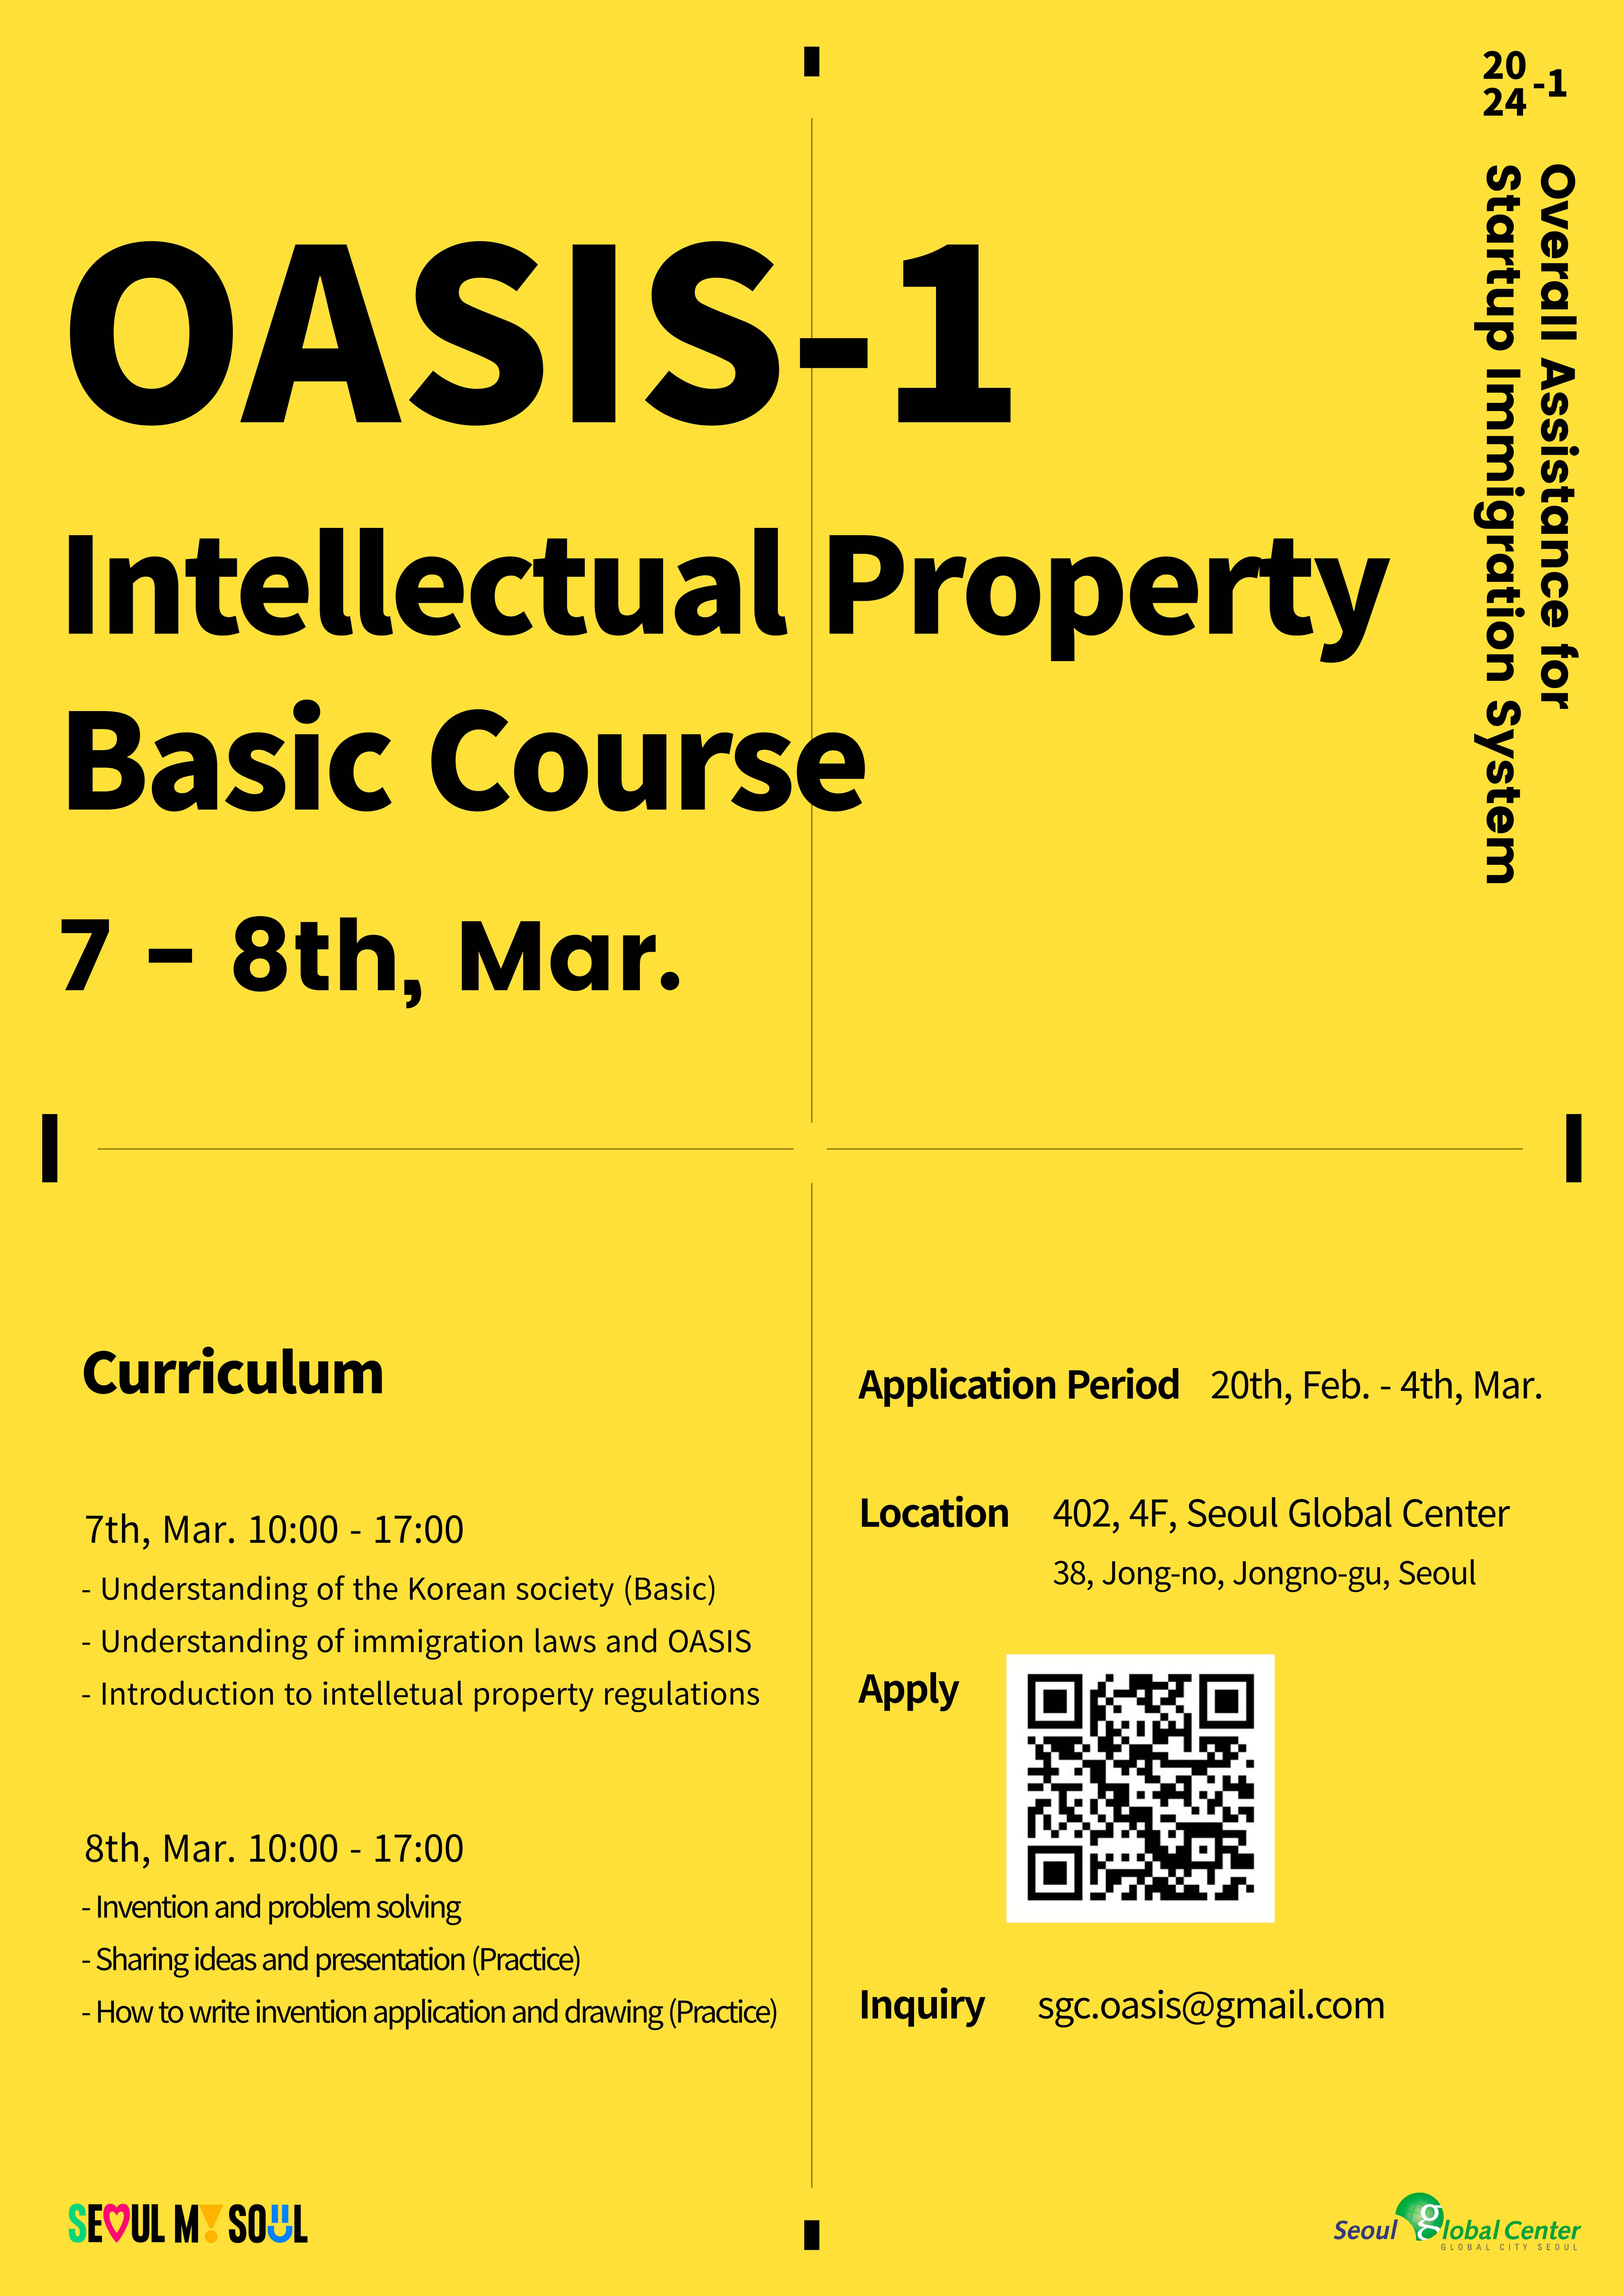 [붙임] OASIS-1(지식재산권 소양 기초교육) 홍보 포스터_page-0001.jpg